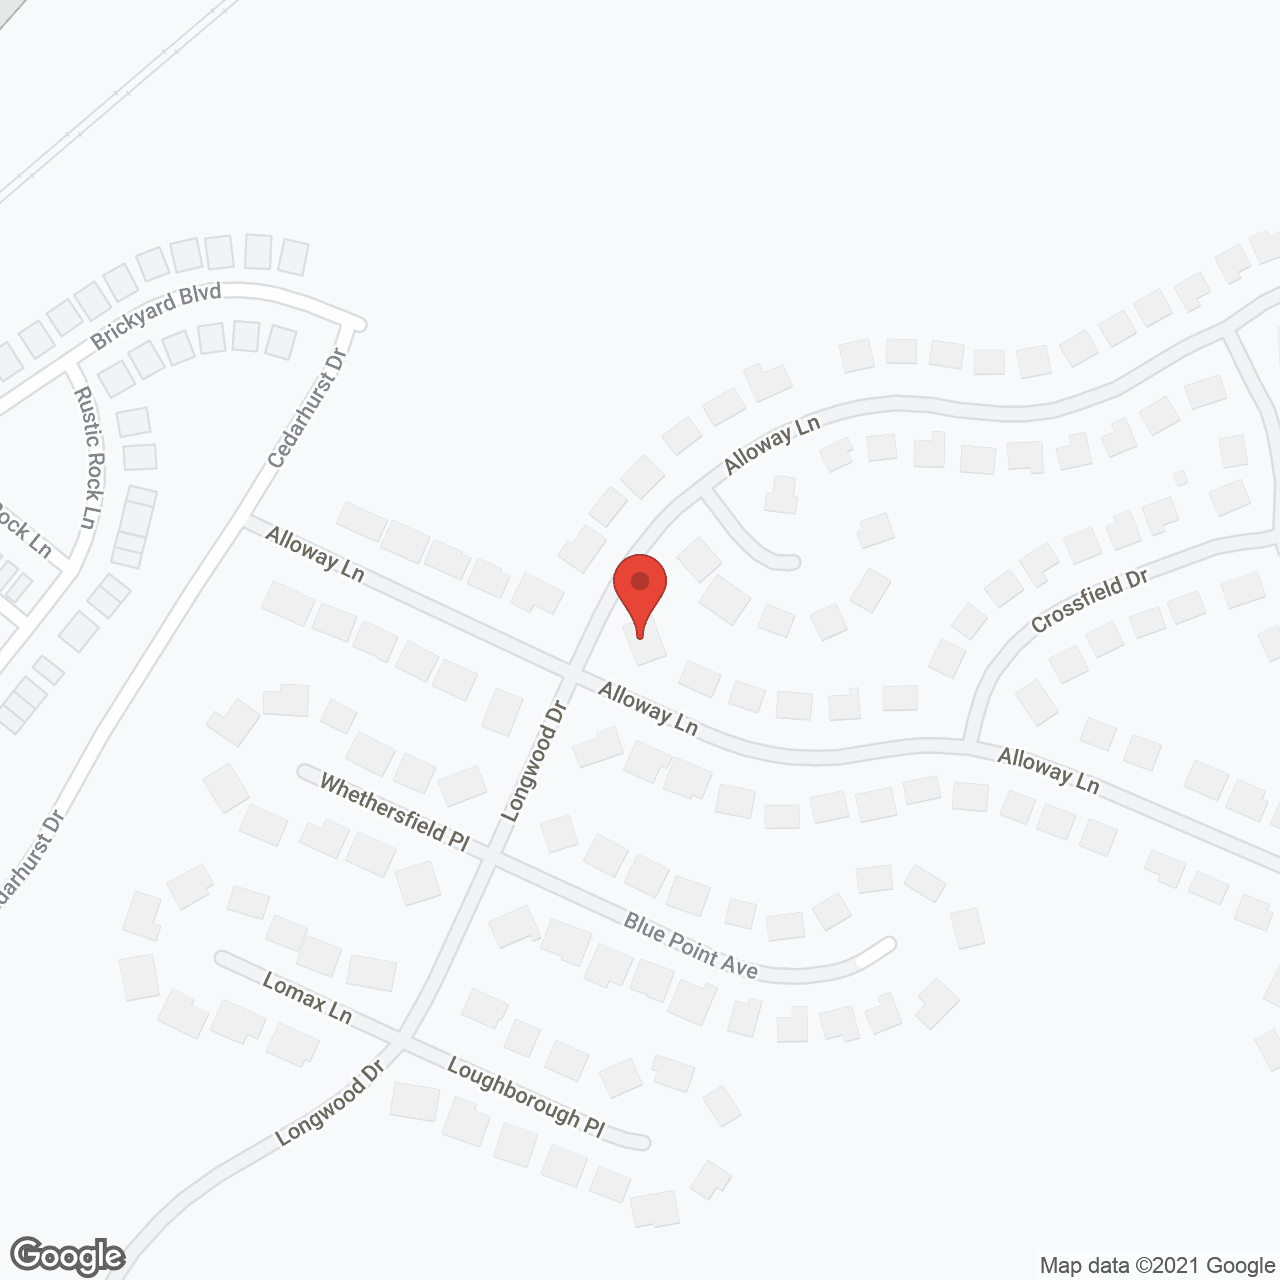 Newbegin Care Home II in google map